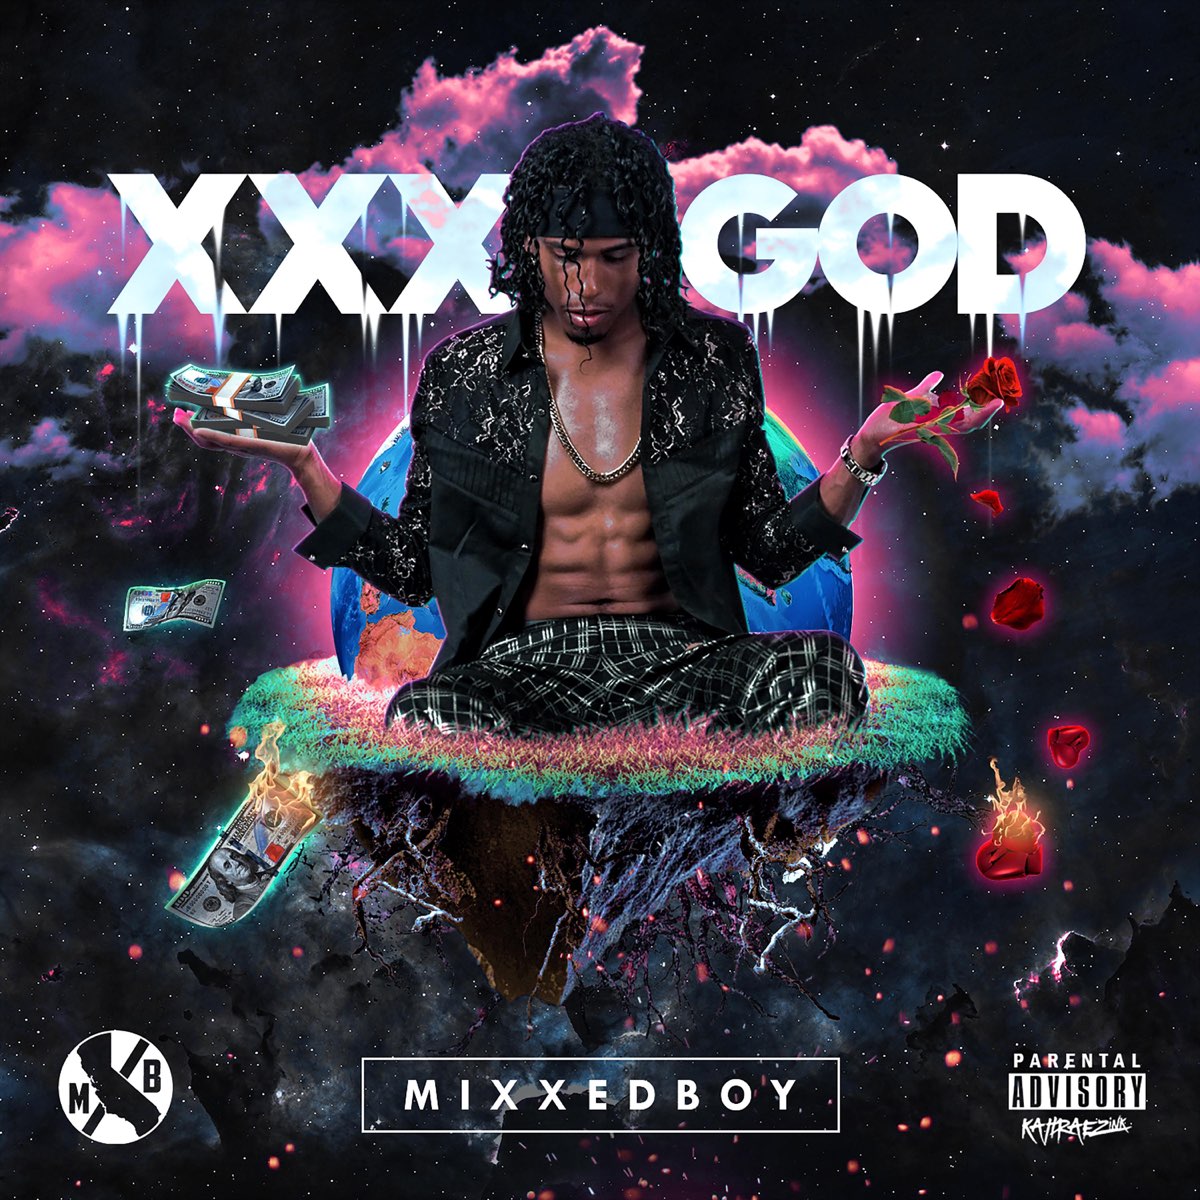 XXX God - EP by Mixxedboy on Apple Music